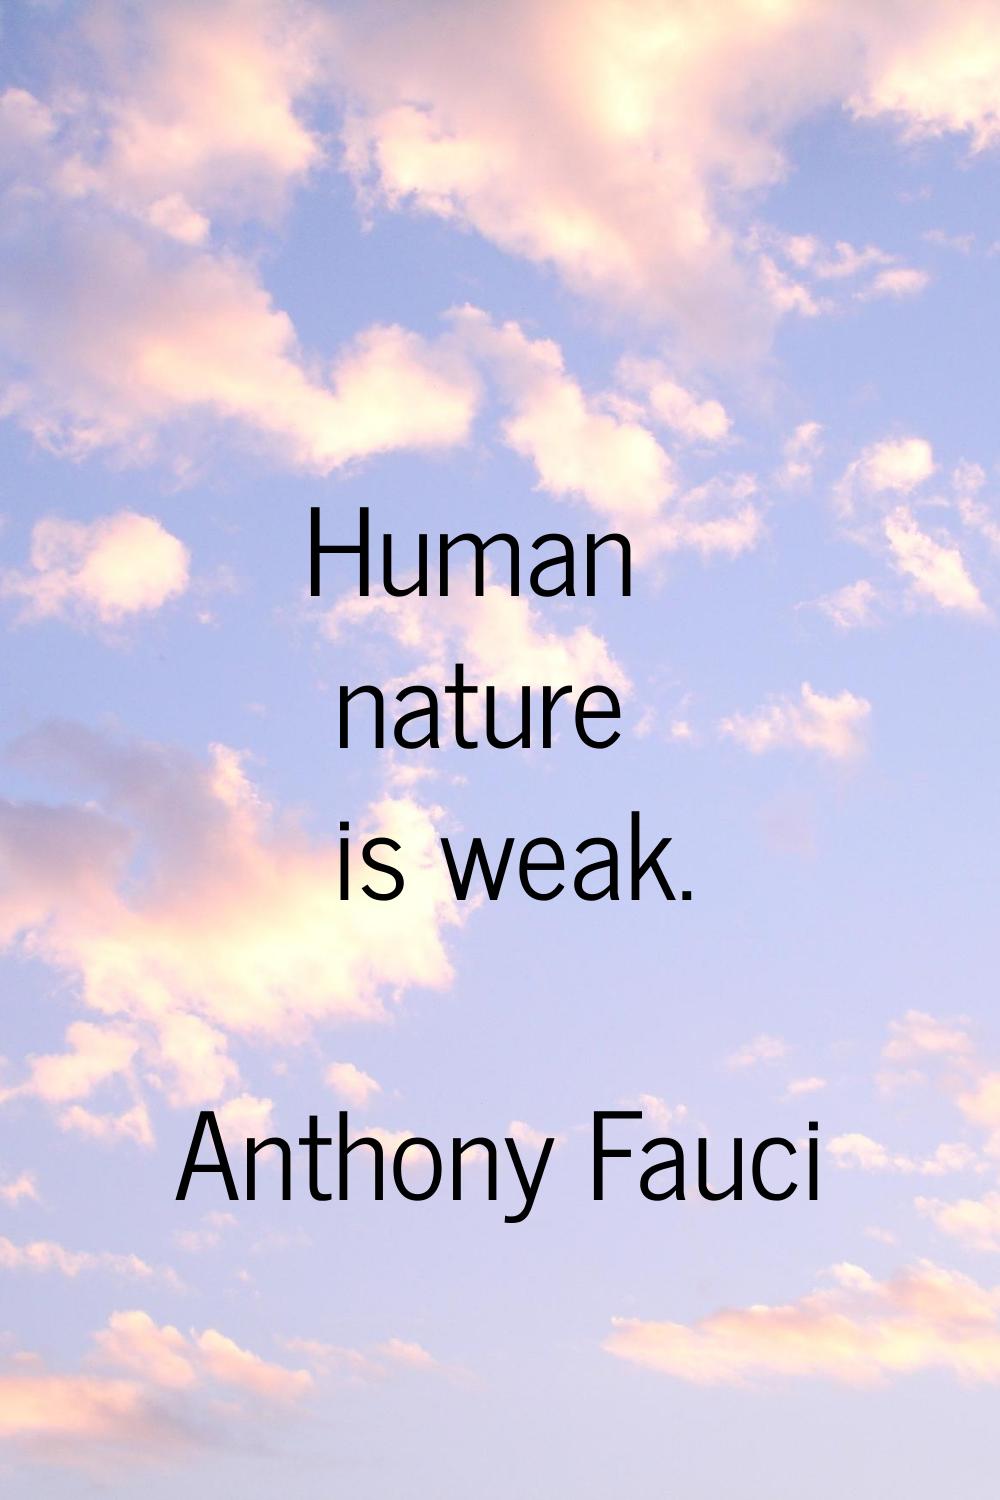 Human nature is weak.